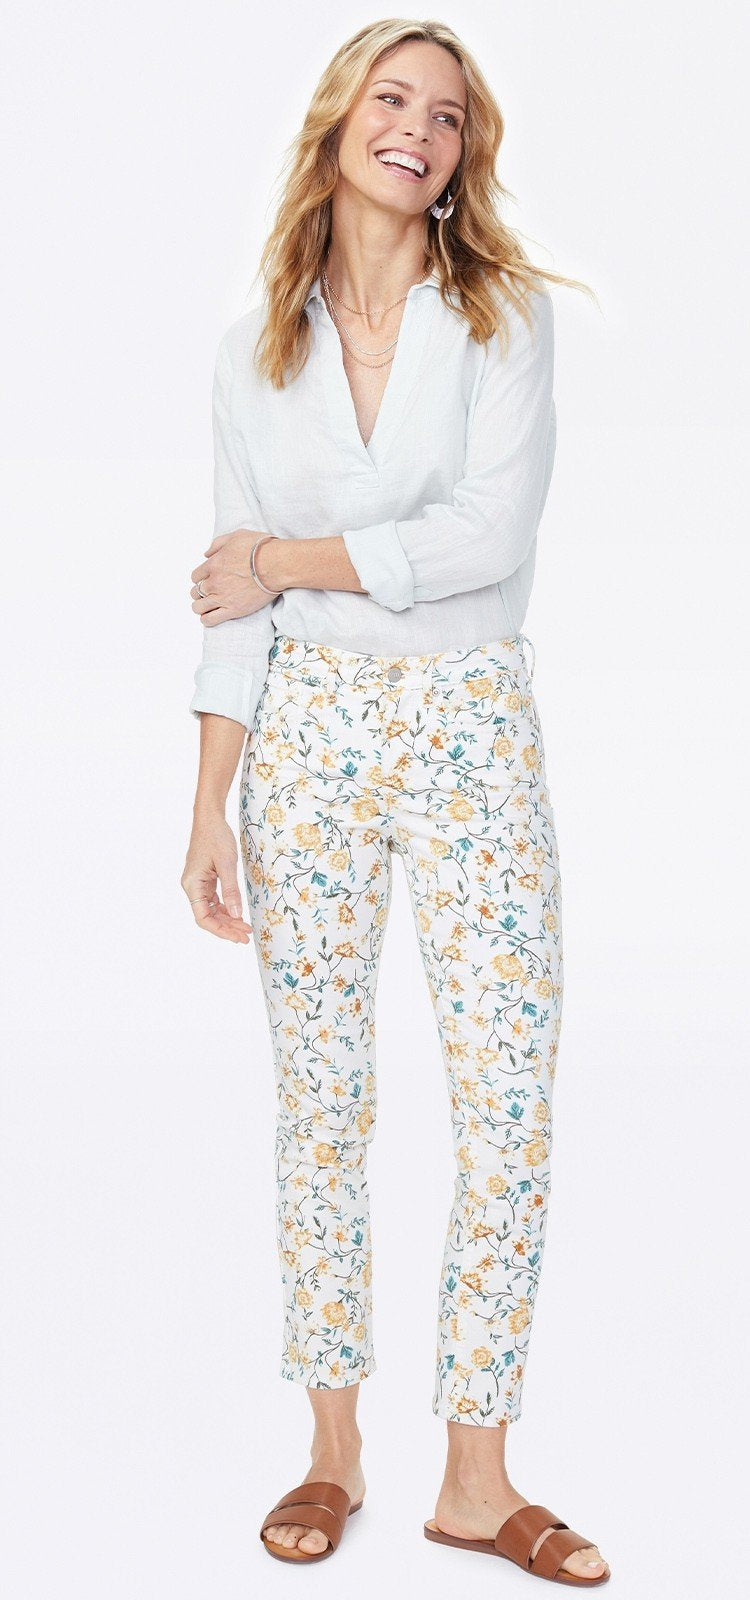 Sheri Slim Ankle Jeans Bedrucktem Premium Denim | Zinnia Arrangement Marigold von Nydj